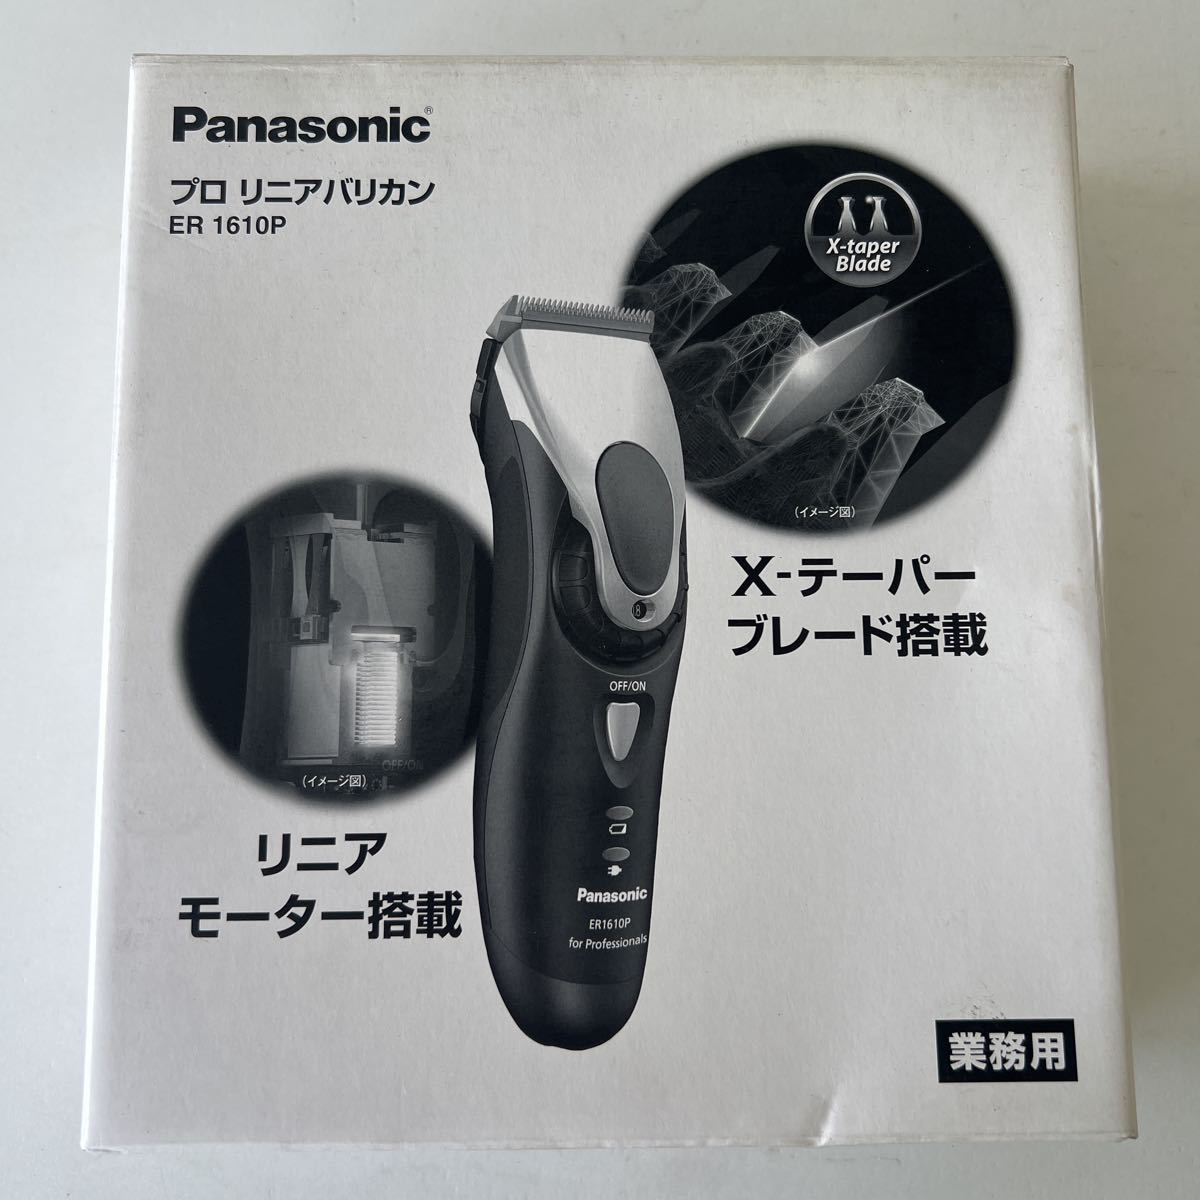 理容 Panasonic プロ リニアバリカン ER 1610P 説明書 箱付き ①(理美容店用品)｜売買されたオークション情報、yahooの